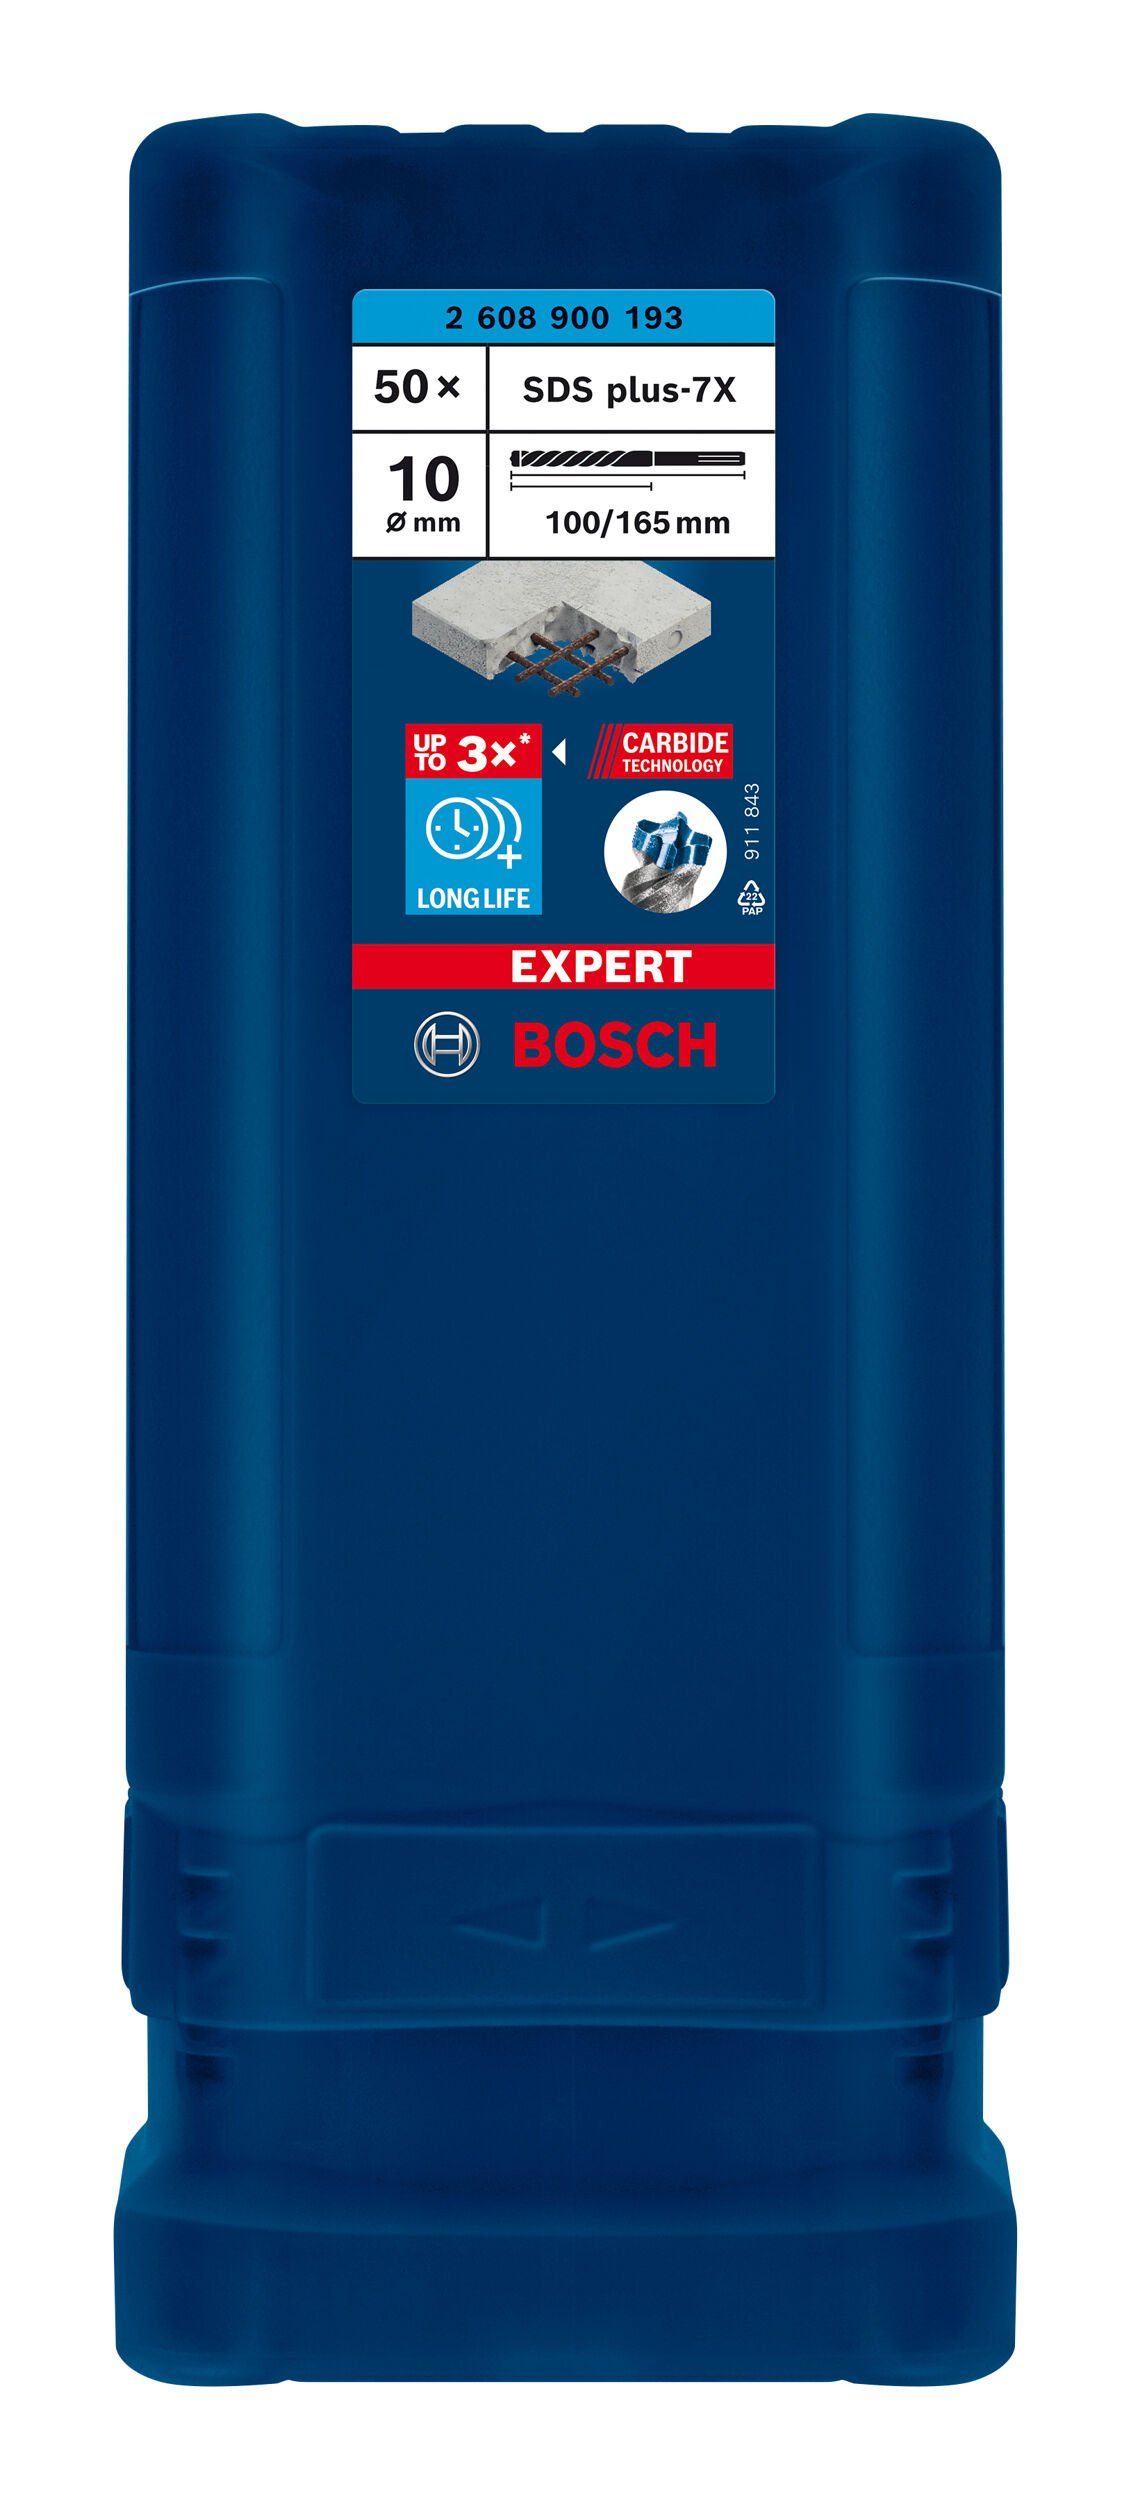 BOSCH Universalbohrer Expert SDS (50 Hammerbohrer mm 100 Stück), 10 50er-Pack - x 165 plus-7X, x 